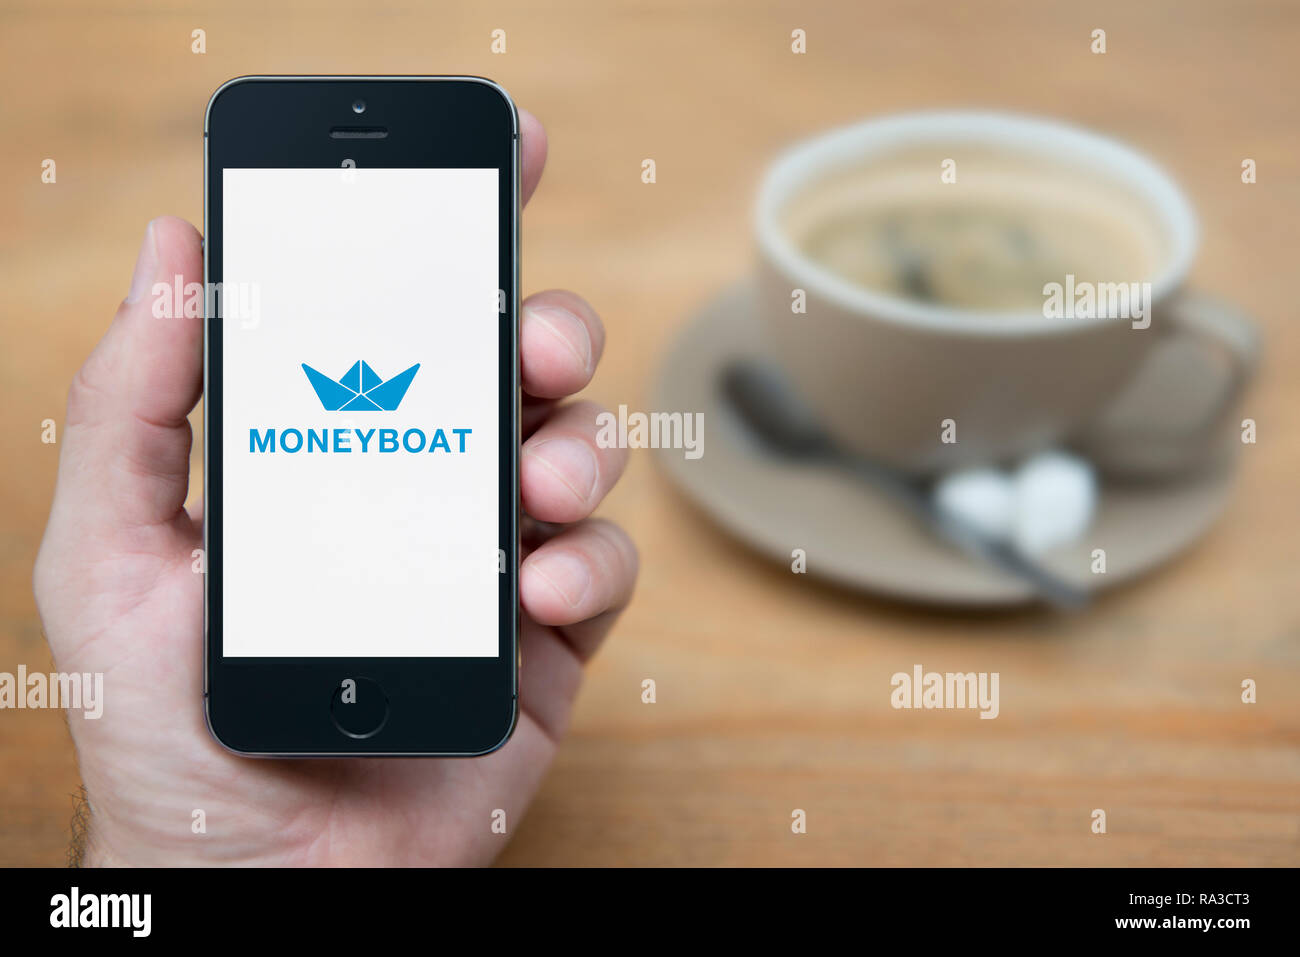 Un uomo guarda al suo iPhone che visualizza il logo Moneyboat (solo uso editoriale). Foto Stock